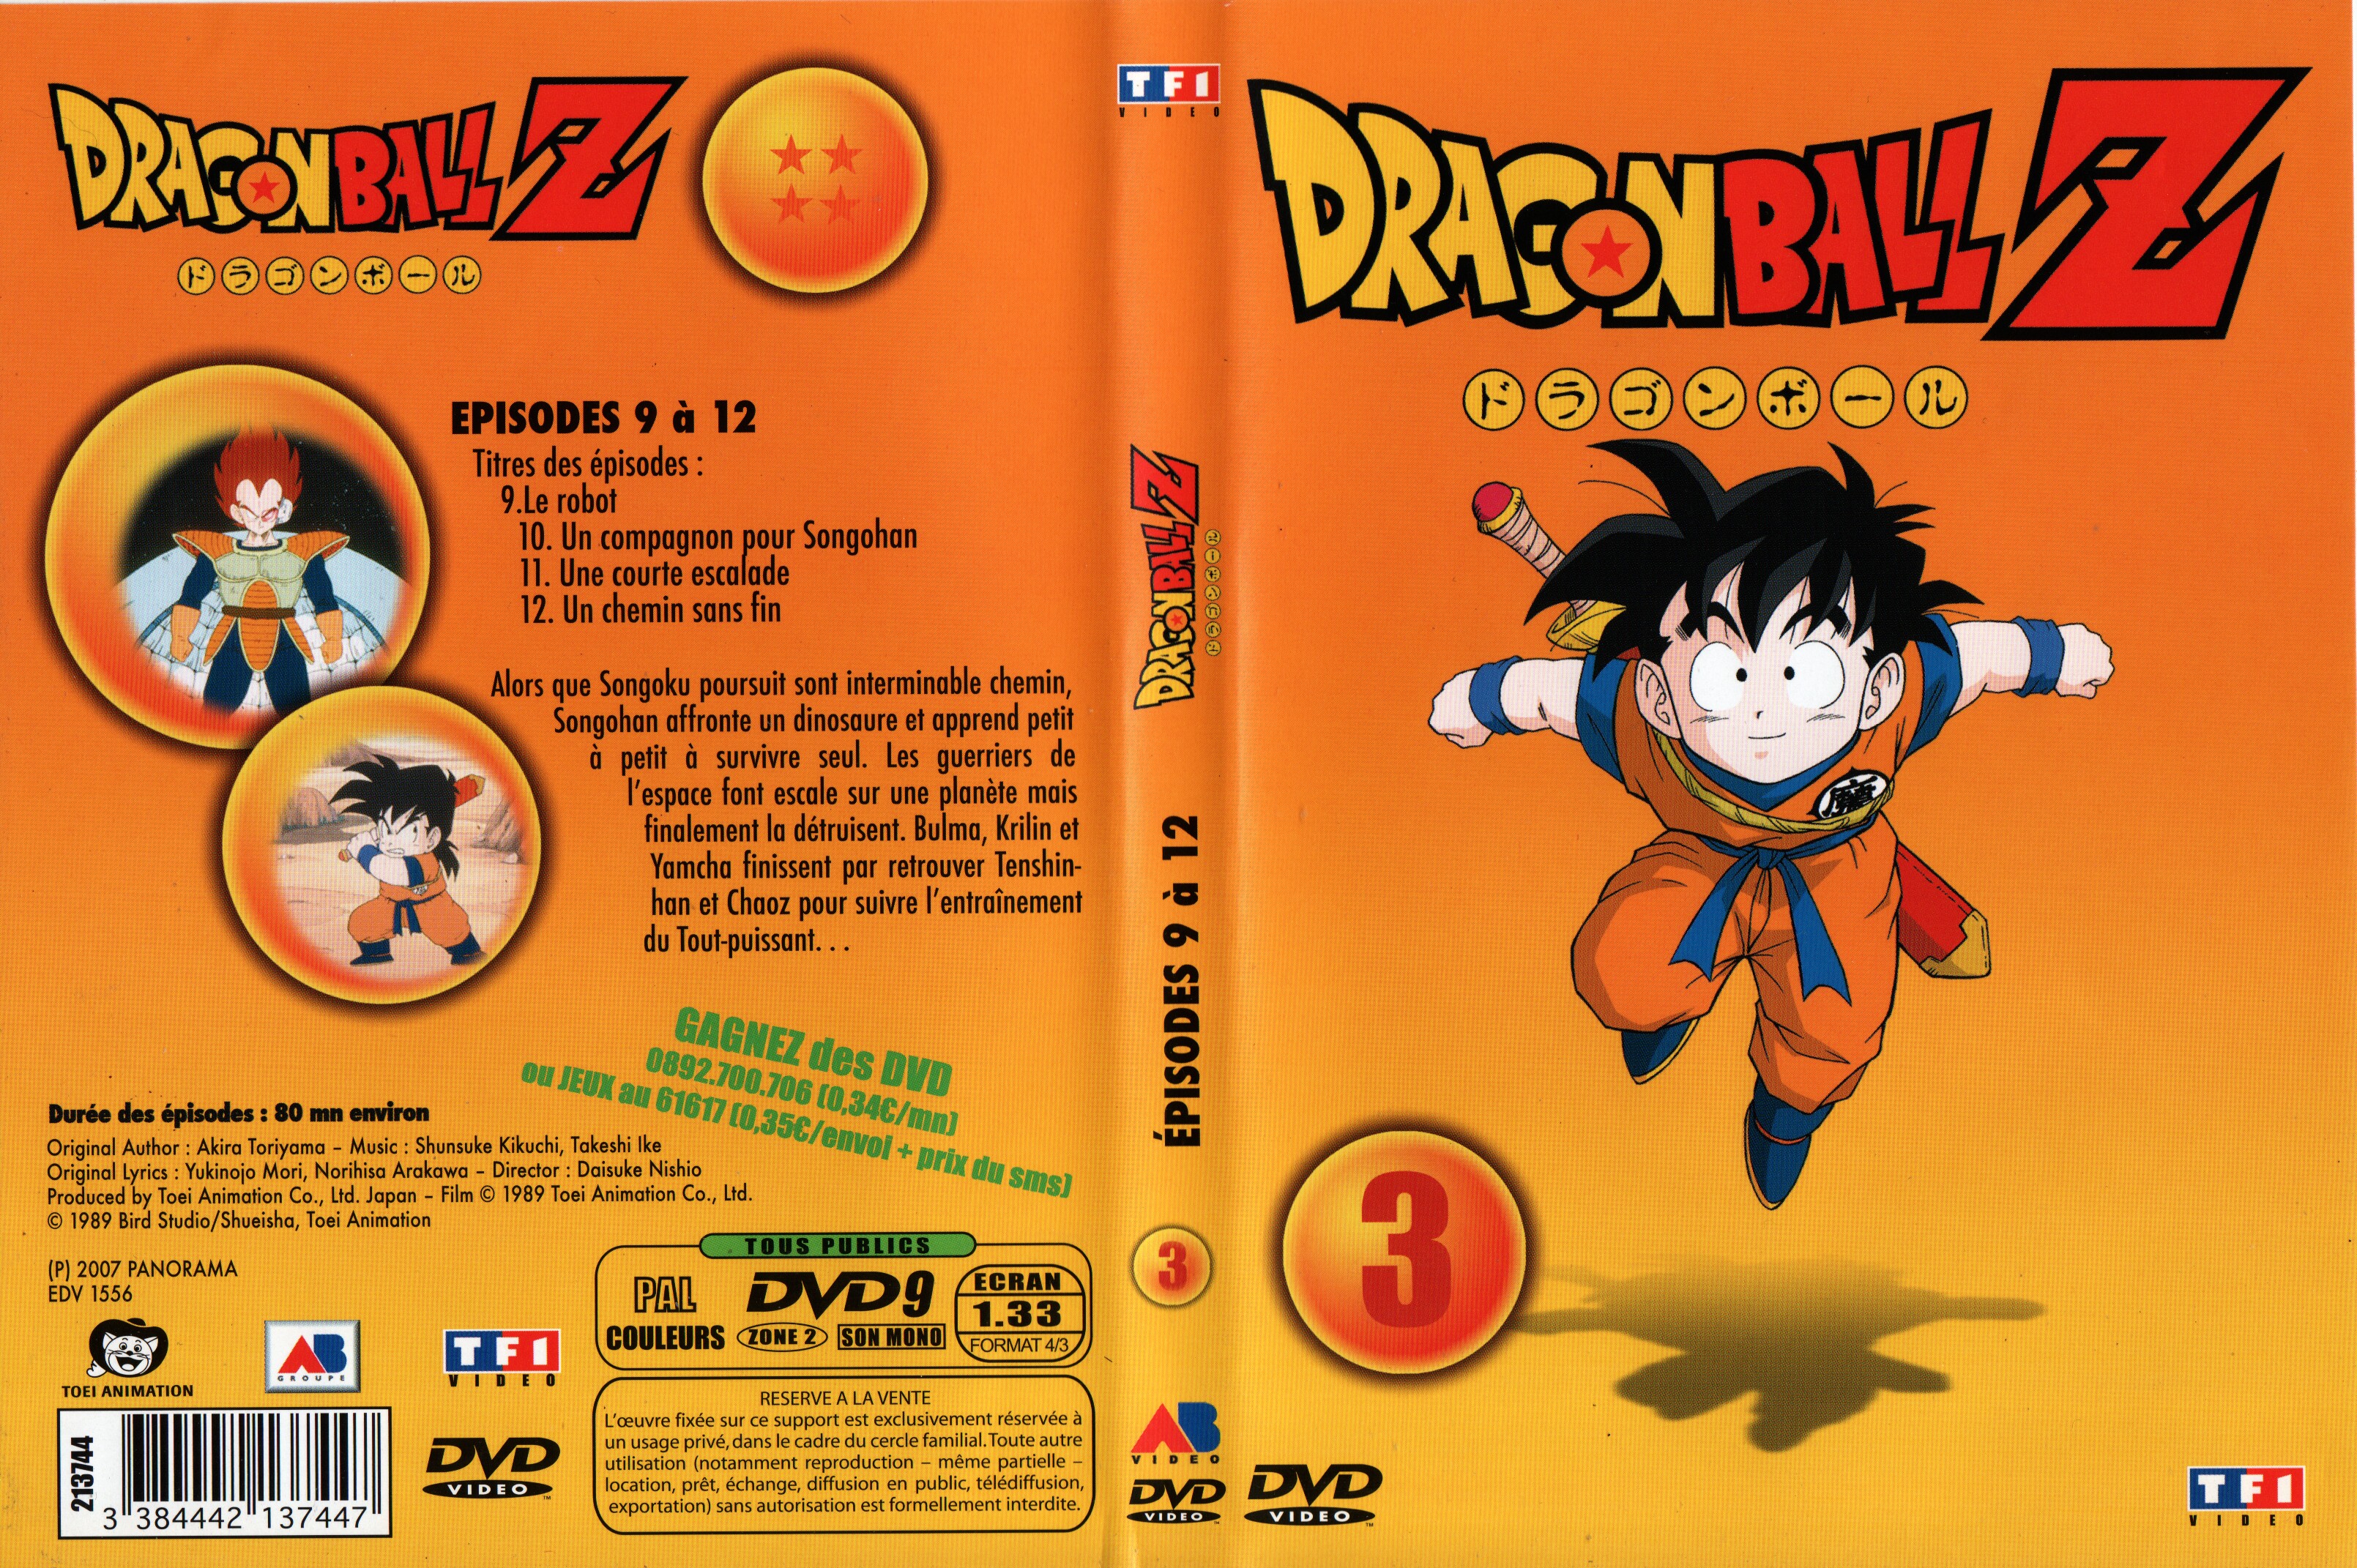 Jaquette DVD Dragon ball Z vol 03 v2